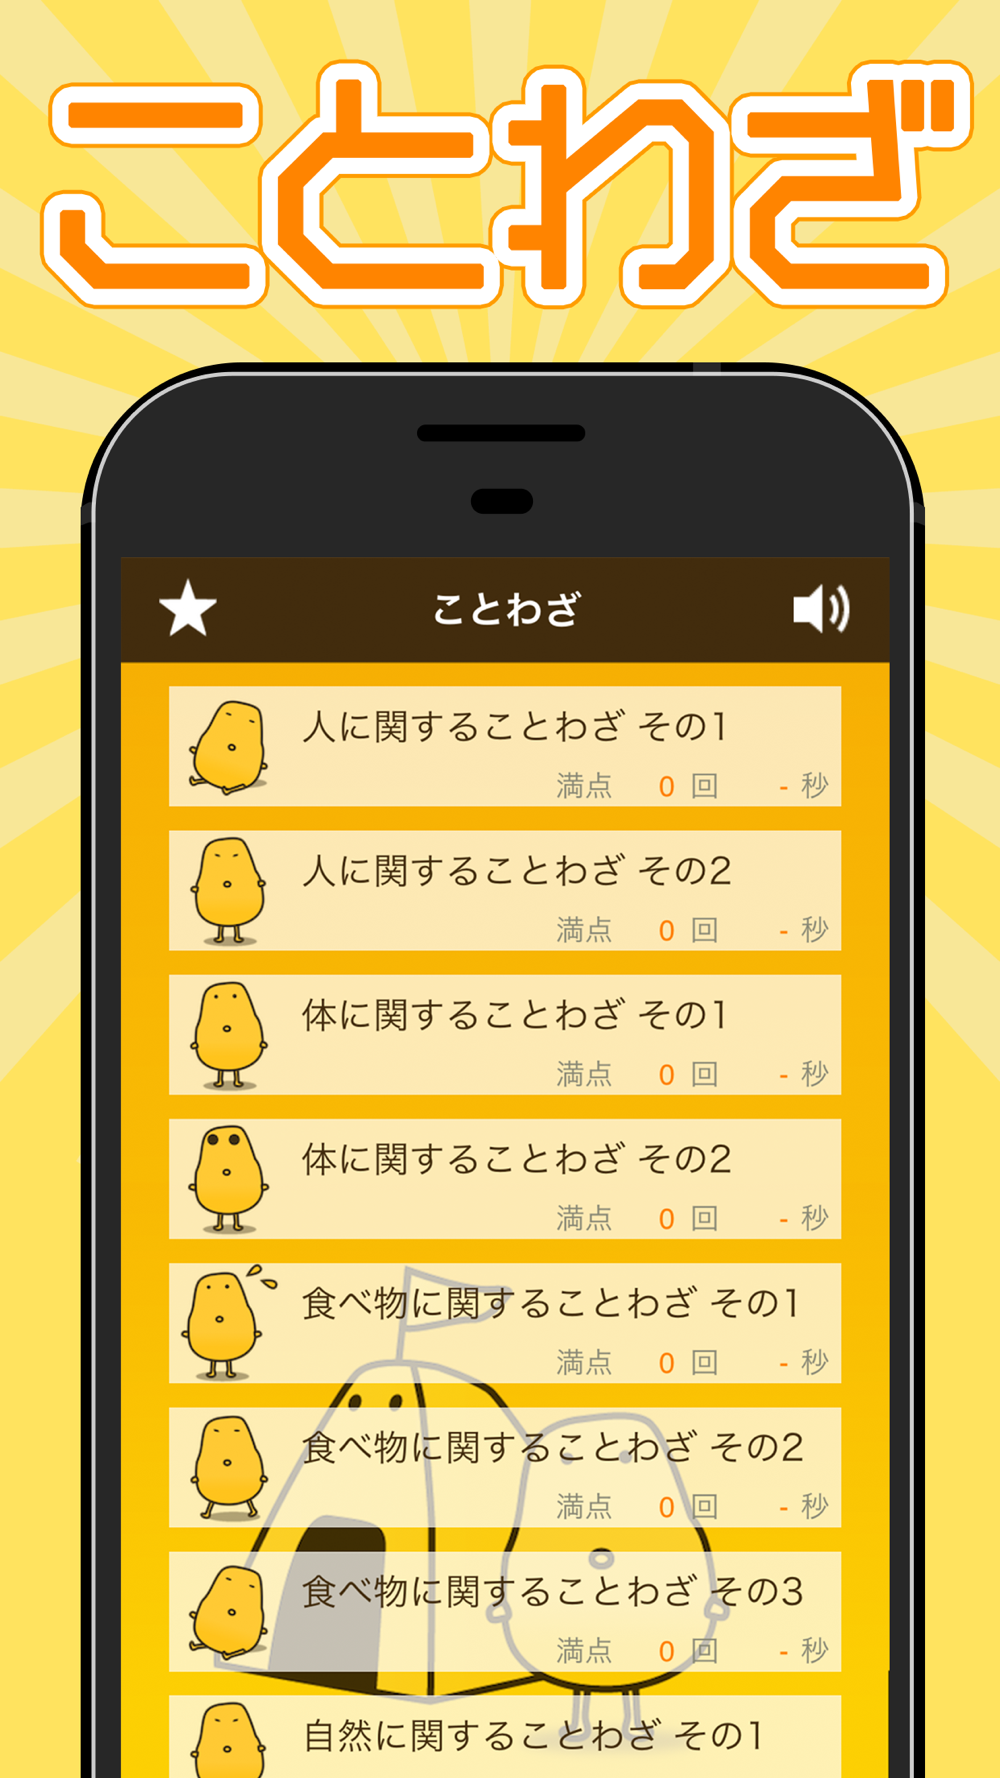 ことわざクイズ はんぷく一般常識 Free Download App For Iphone Steprimo Com